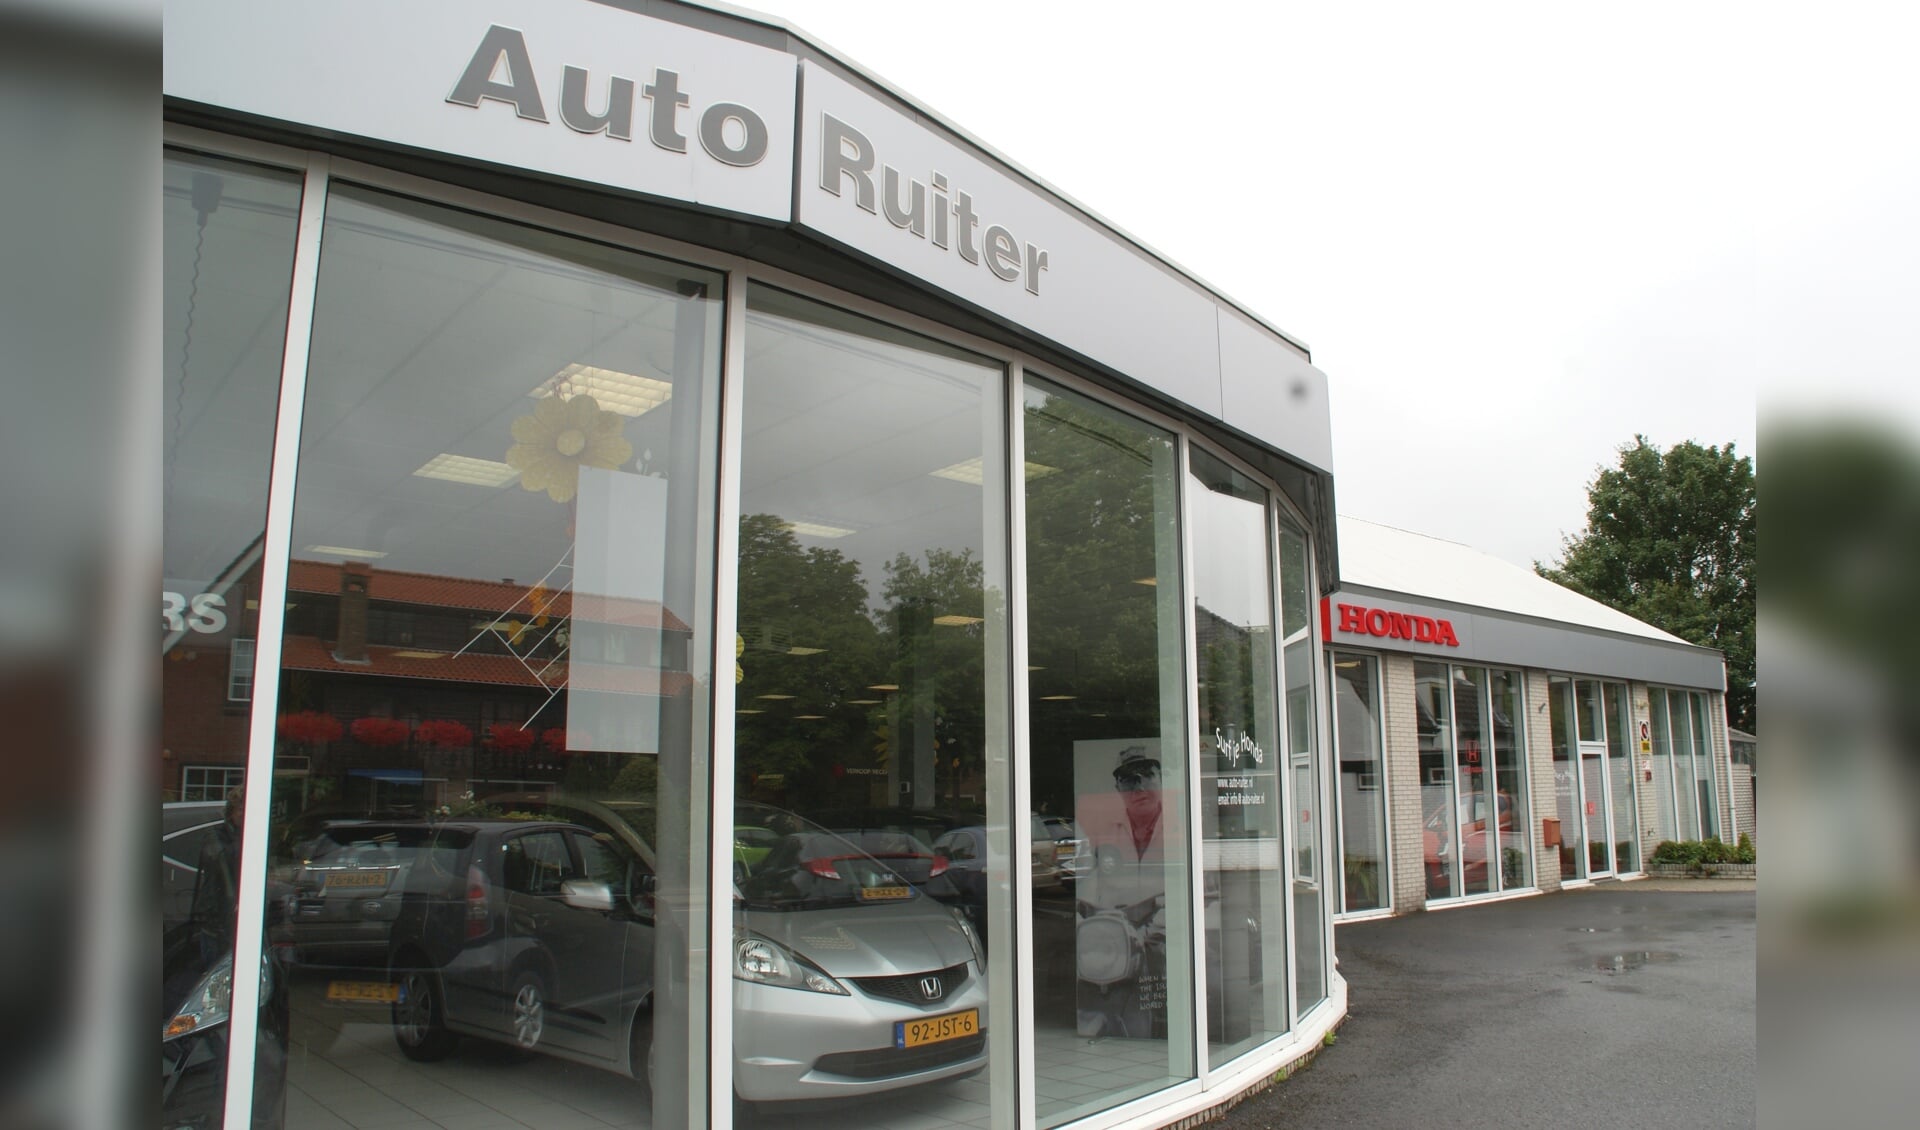 Het pand van Auto Ruiter, duidelijk herkenbaar aan het Oosteinde in Wateringen.